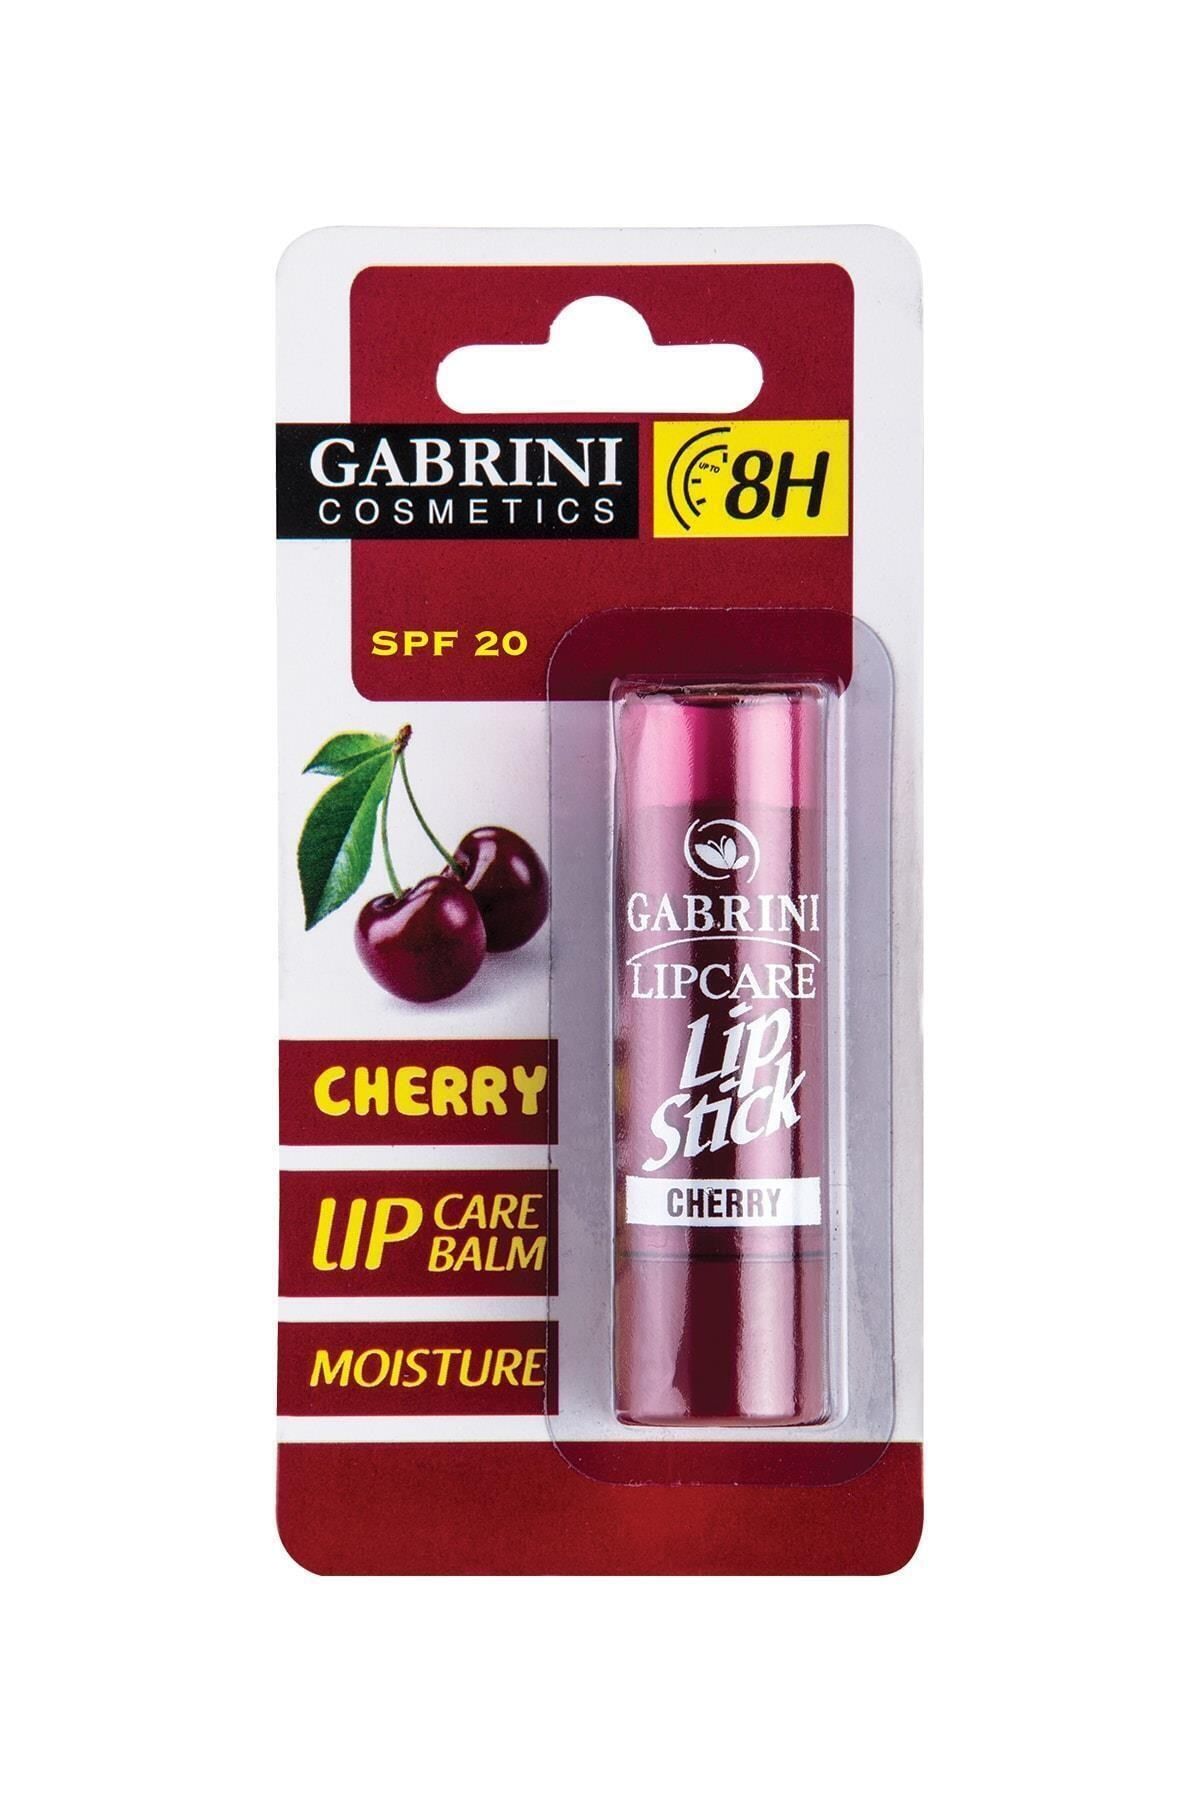 Gabrini Dudak Balmı - Lip Care Cherry